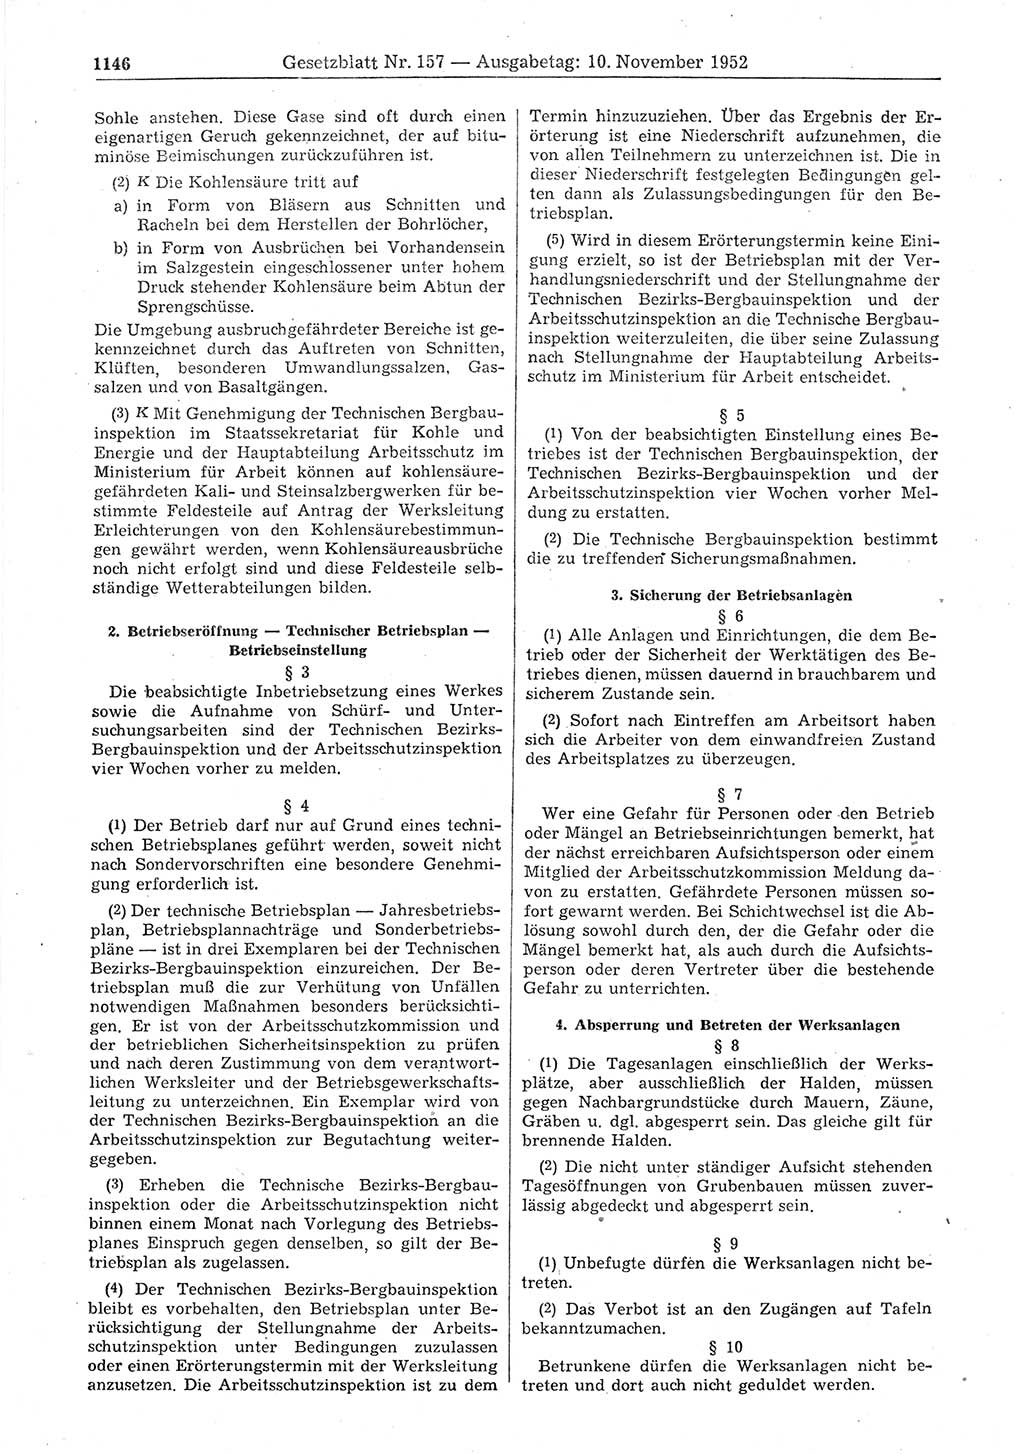 Gesetzblatt (GBl.) der Deutschen Demokratischen Republik (DDR) 1952, Seite 1146 (GBl. DDR 1952, S. 1146)